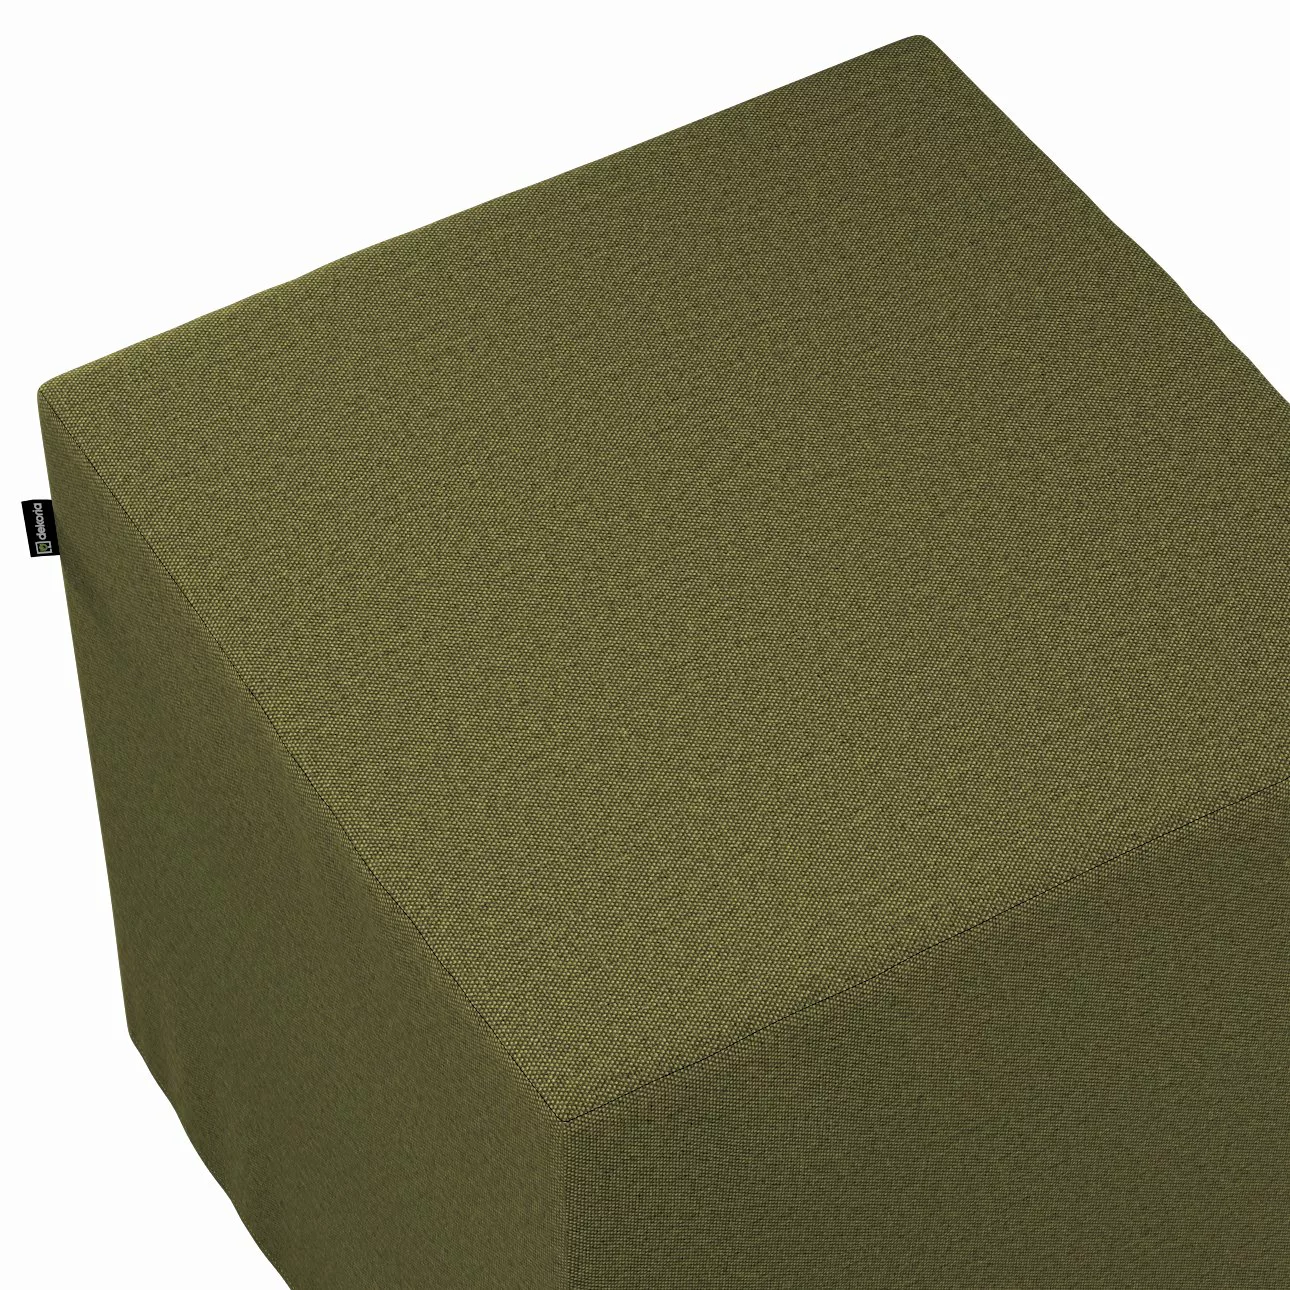 Bezug für Sitzwürfel, olivgrün, Bezug für Sitzwürfel 40 x 40 x 40 cm, Etna günstig online kaufen